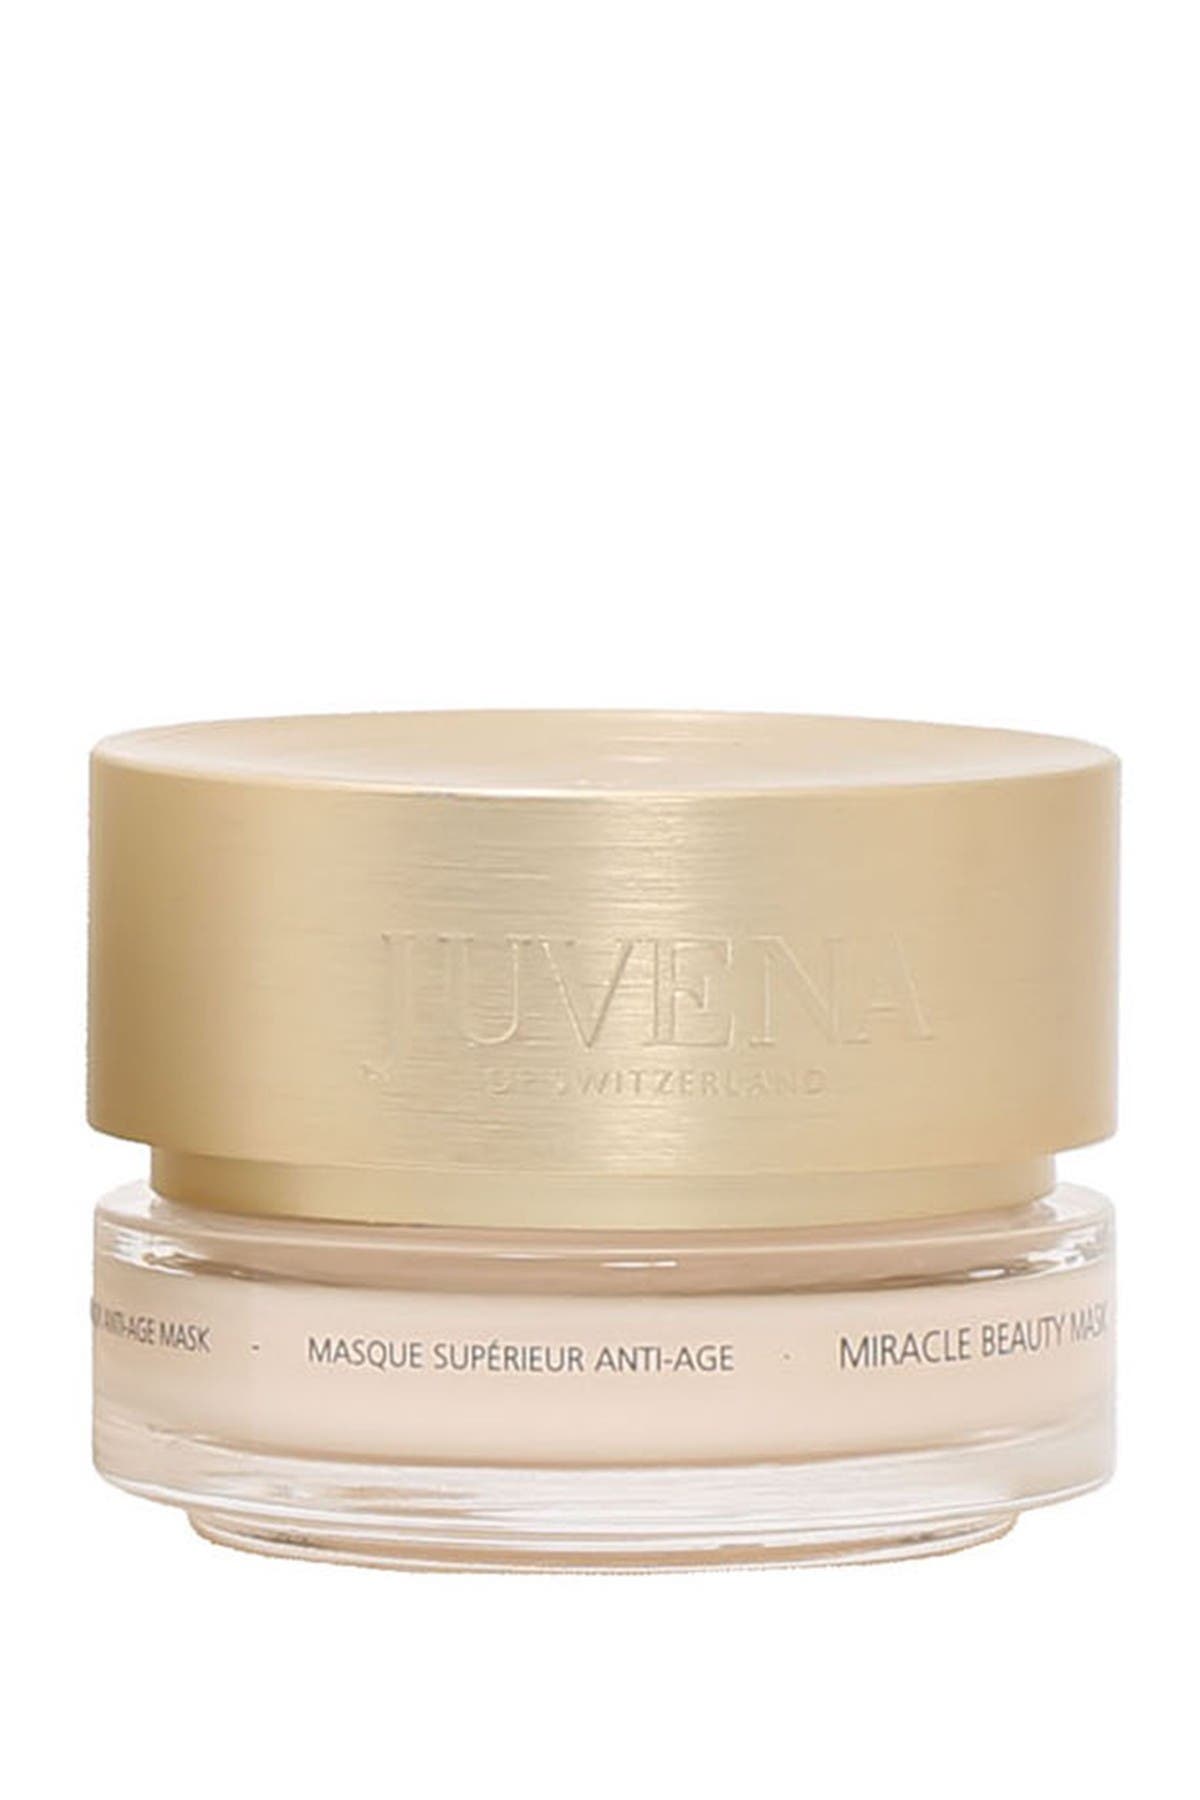 Juvena Miracle Beauty Mask Jar